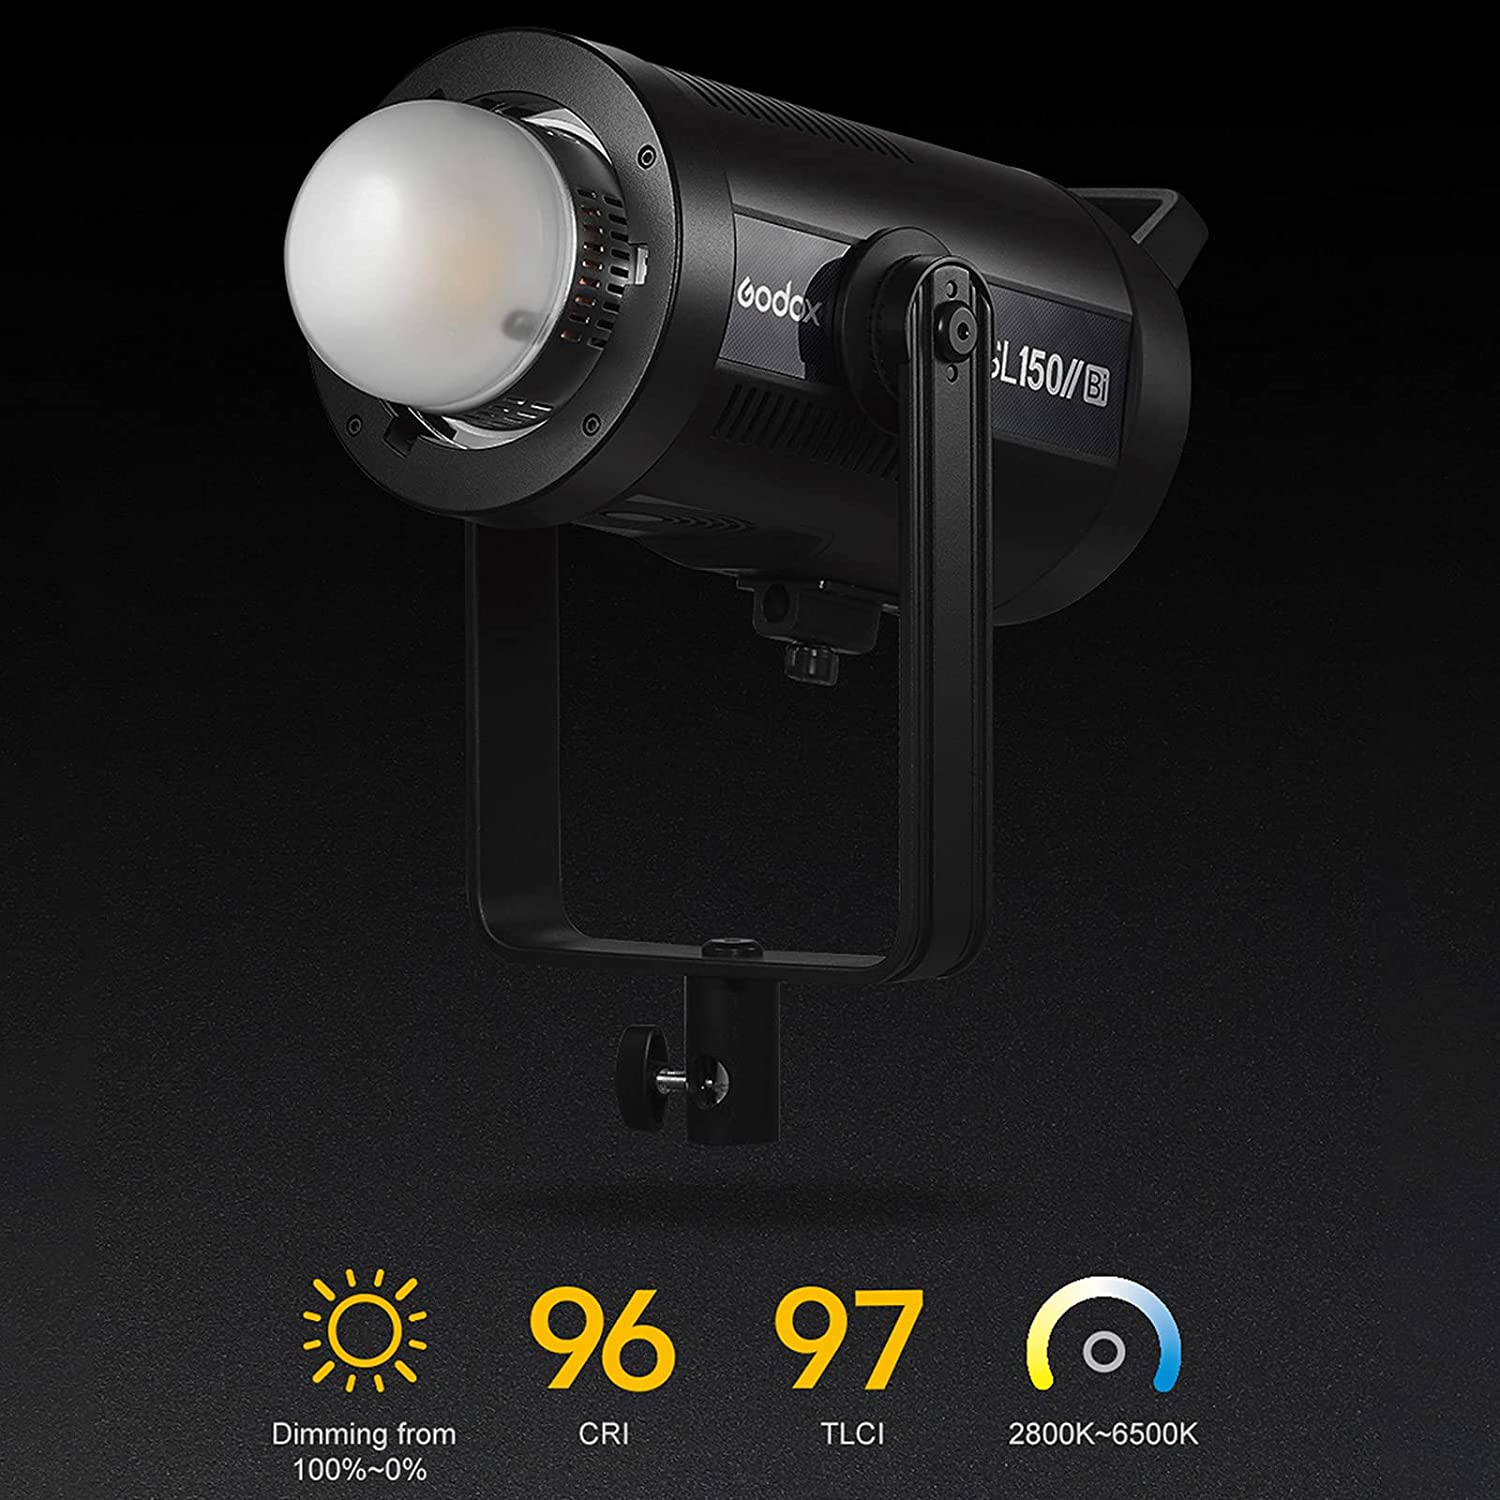 Godox SL150IIBi LED-Videolicht 150W zweifarbig, Sparen Sie 8%, Check out mit Aktionscode bei Amazon UC44QF9P - INSSTRO